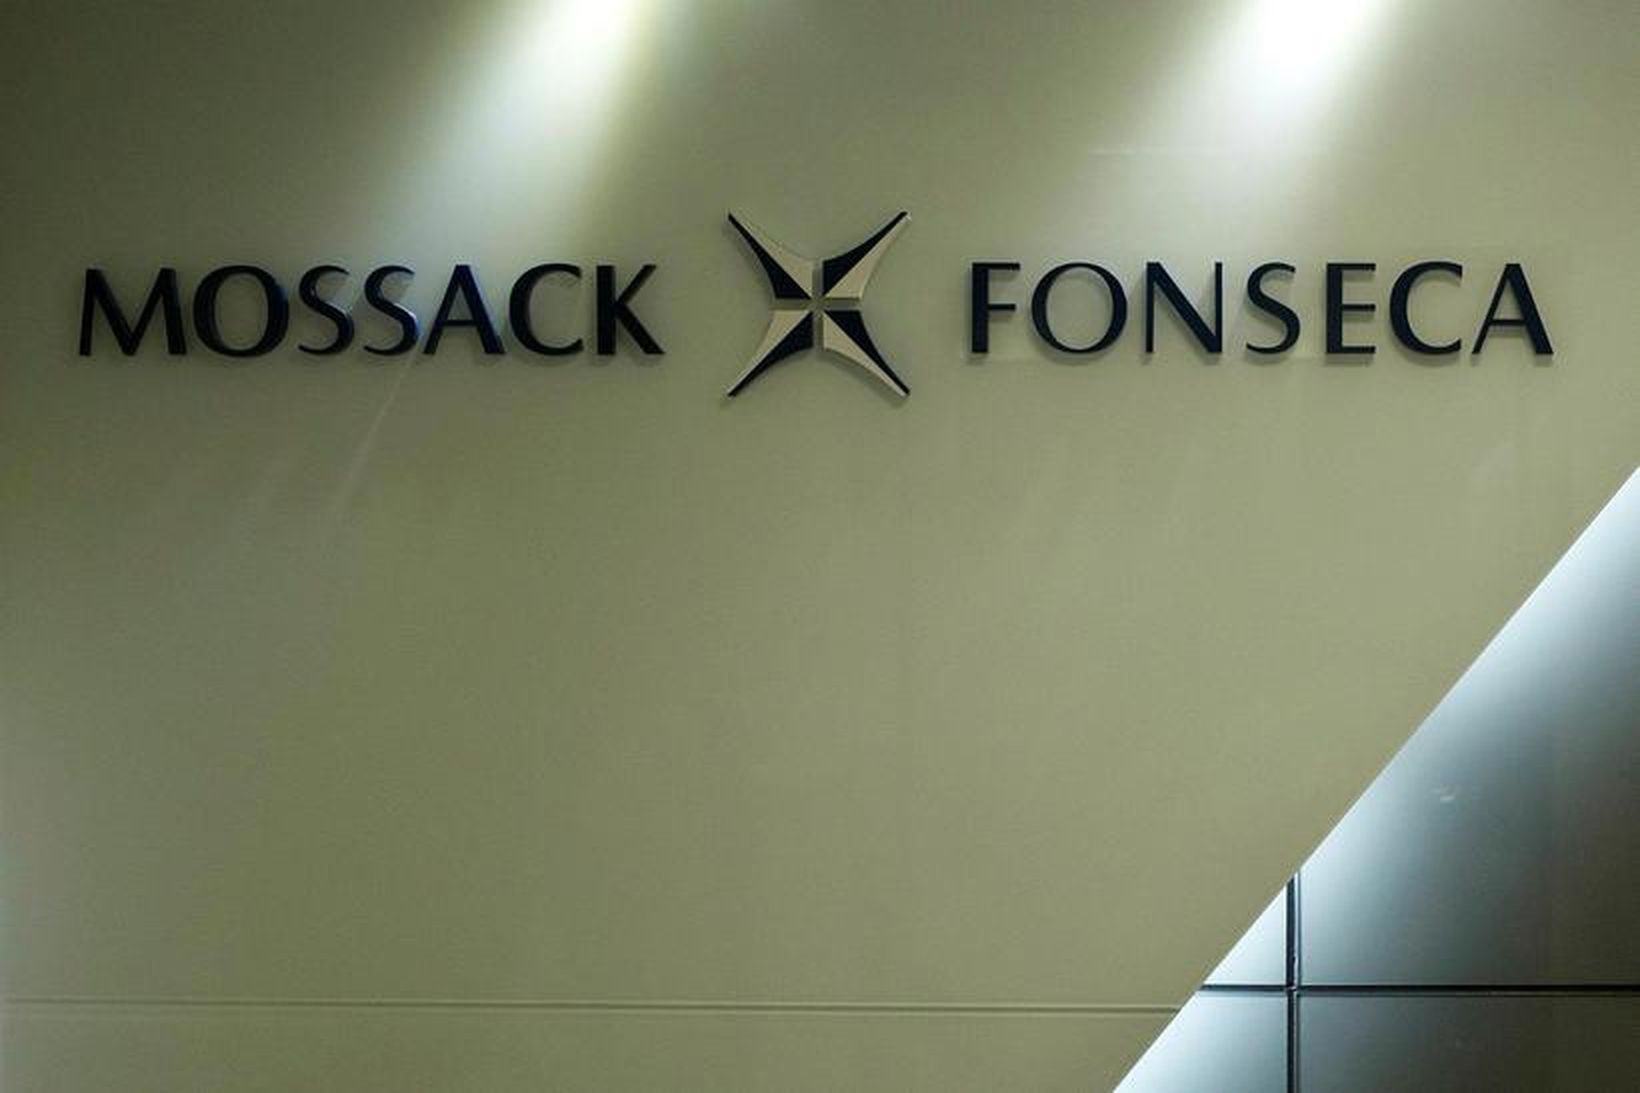 Panamaskjölunum var lekið frá lögmannsstofunni Mossack Fonseca.